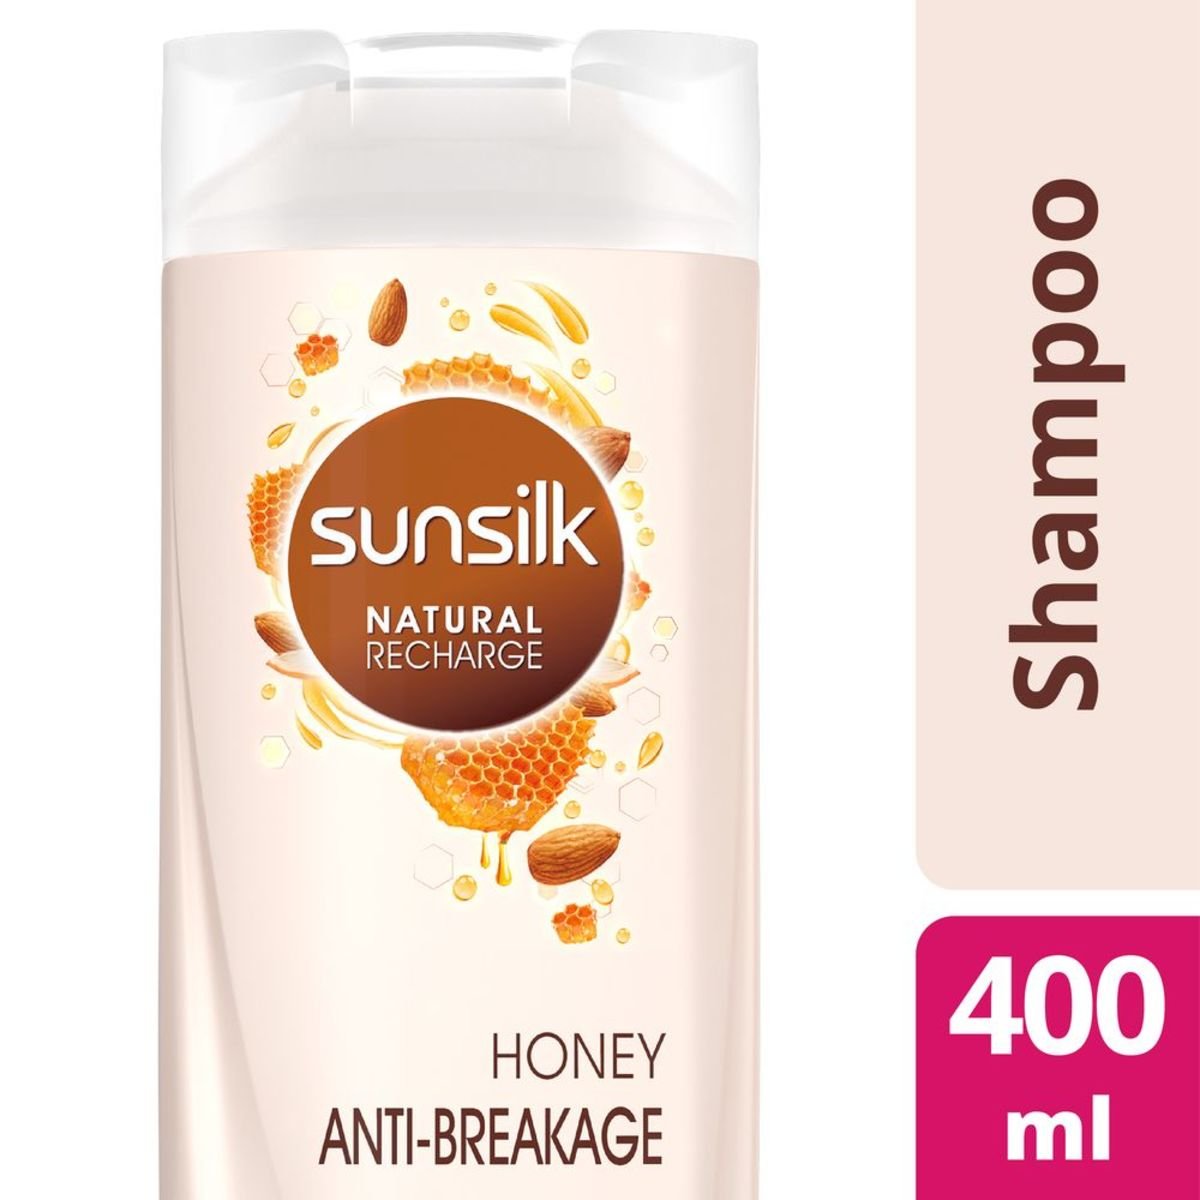 Sunsilk Honey Anti-Breakage Shampoo, 400 ml